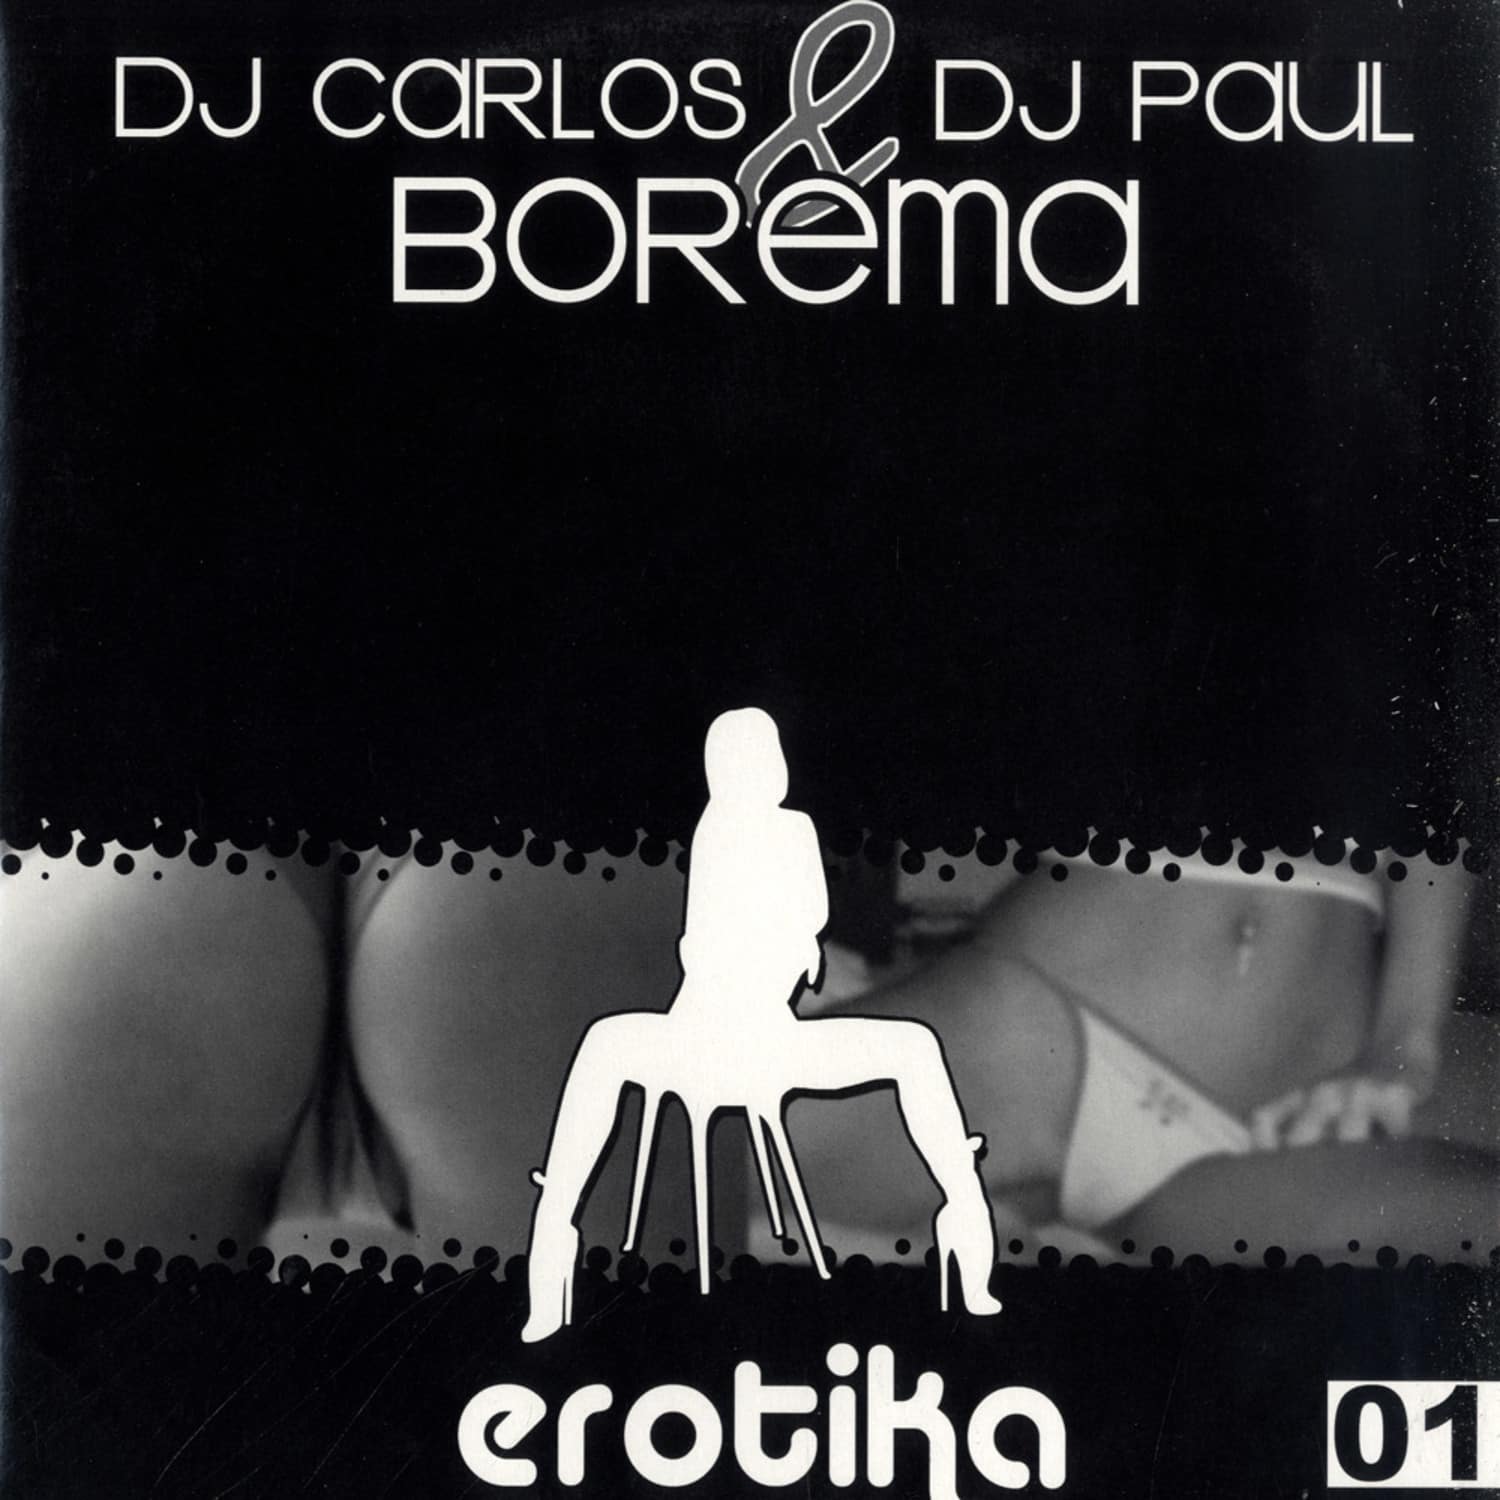 DJ Carlos & DJ Paul Borek - BOREMA